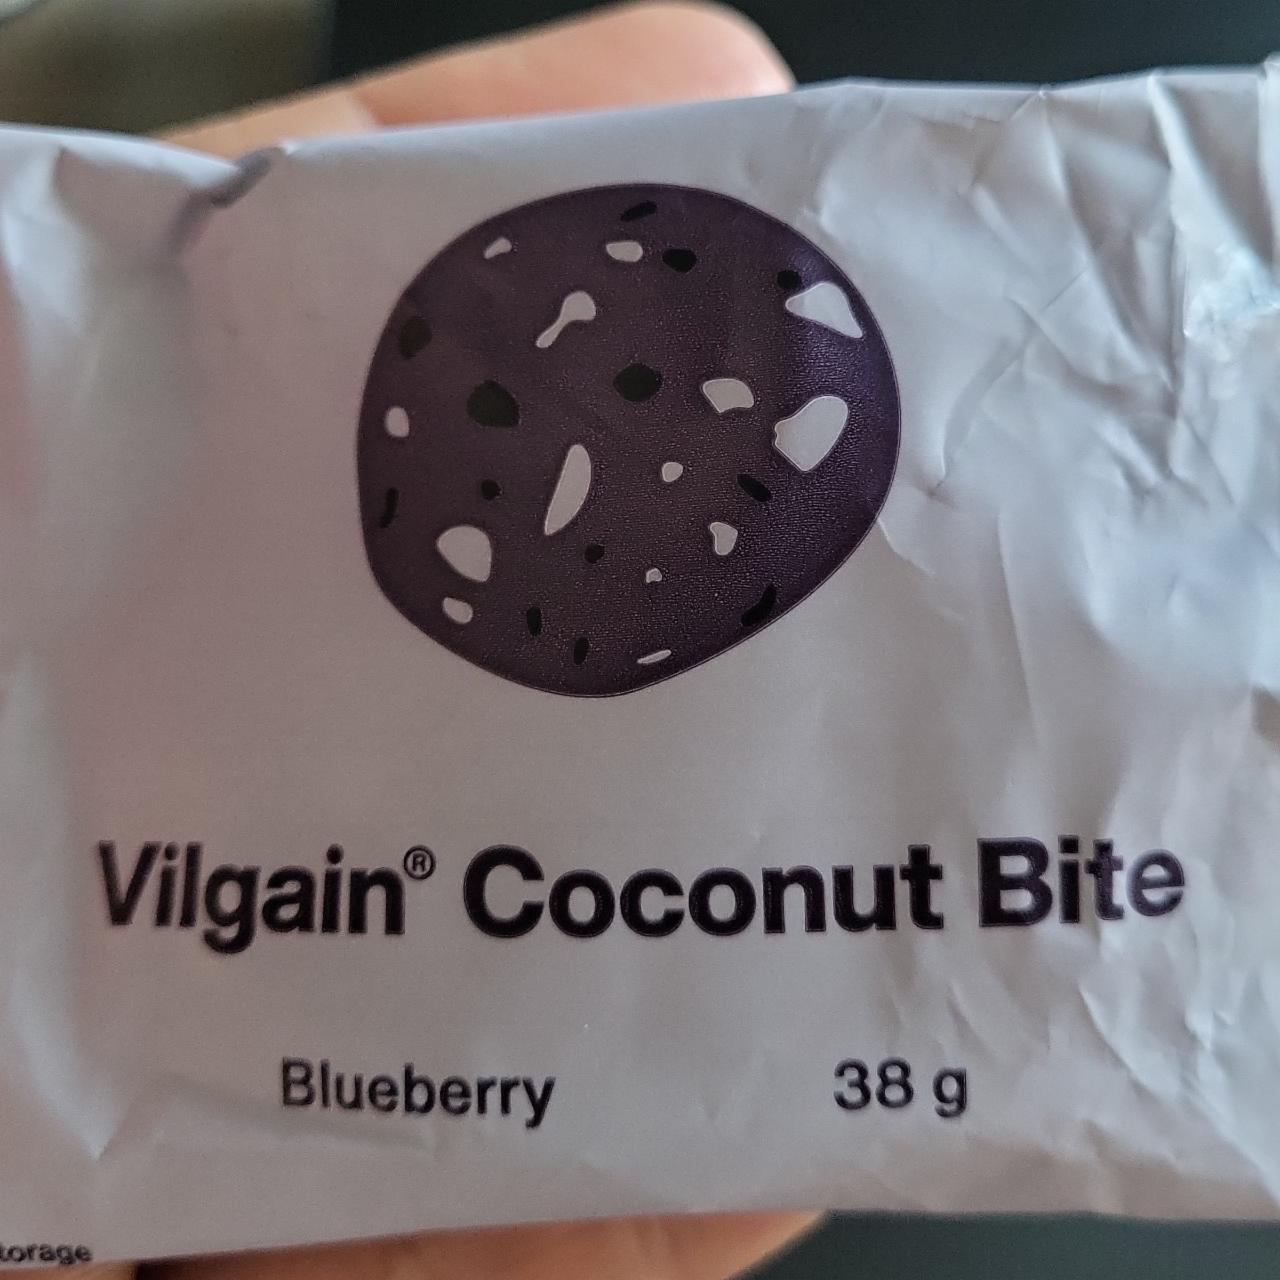 Fotografie - Coconut Bite Blueberry Vilgain